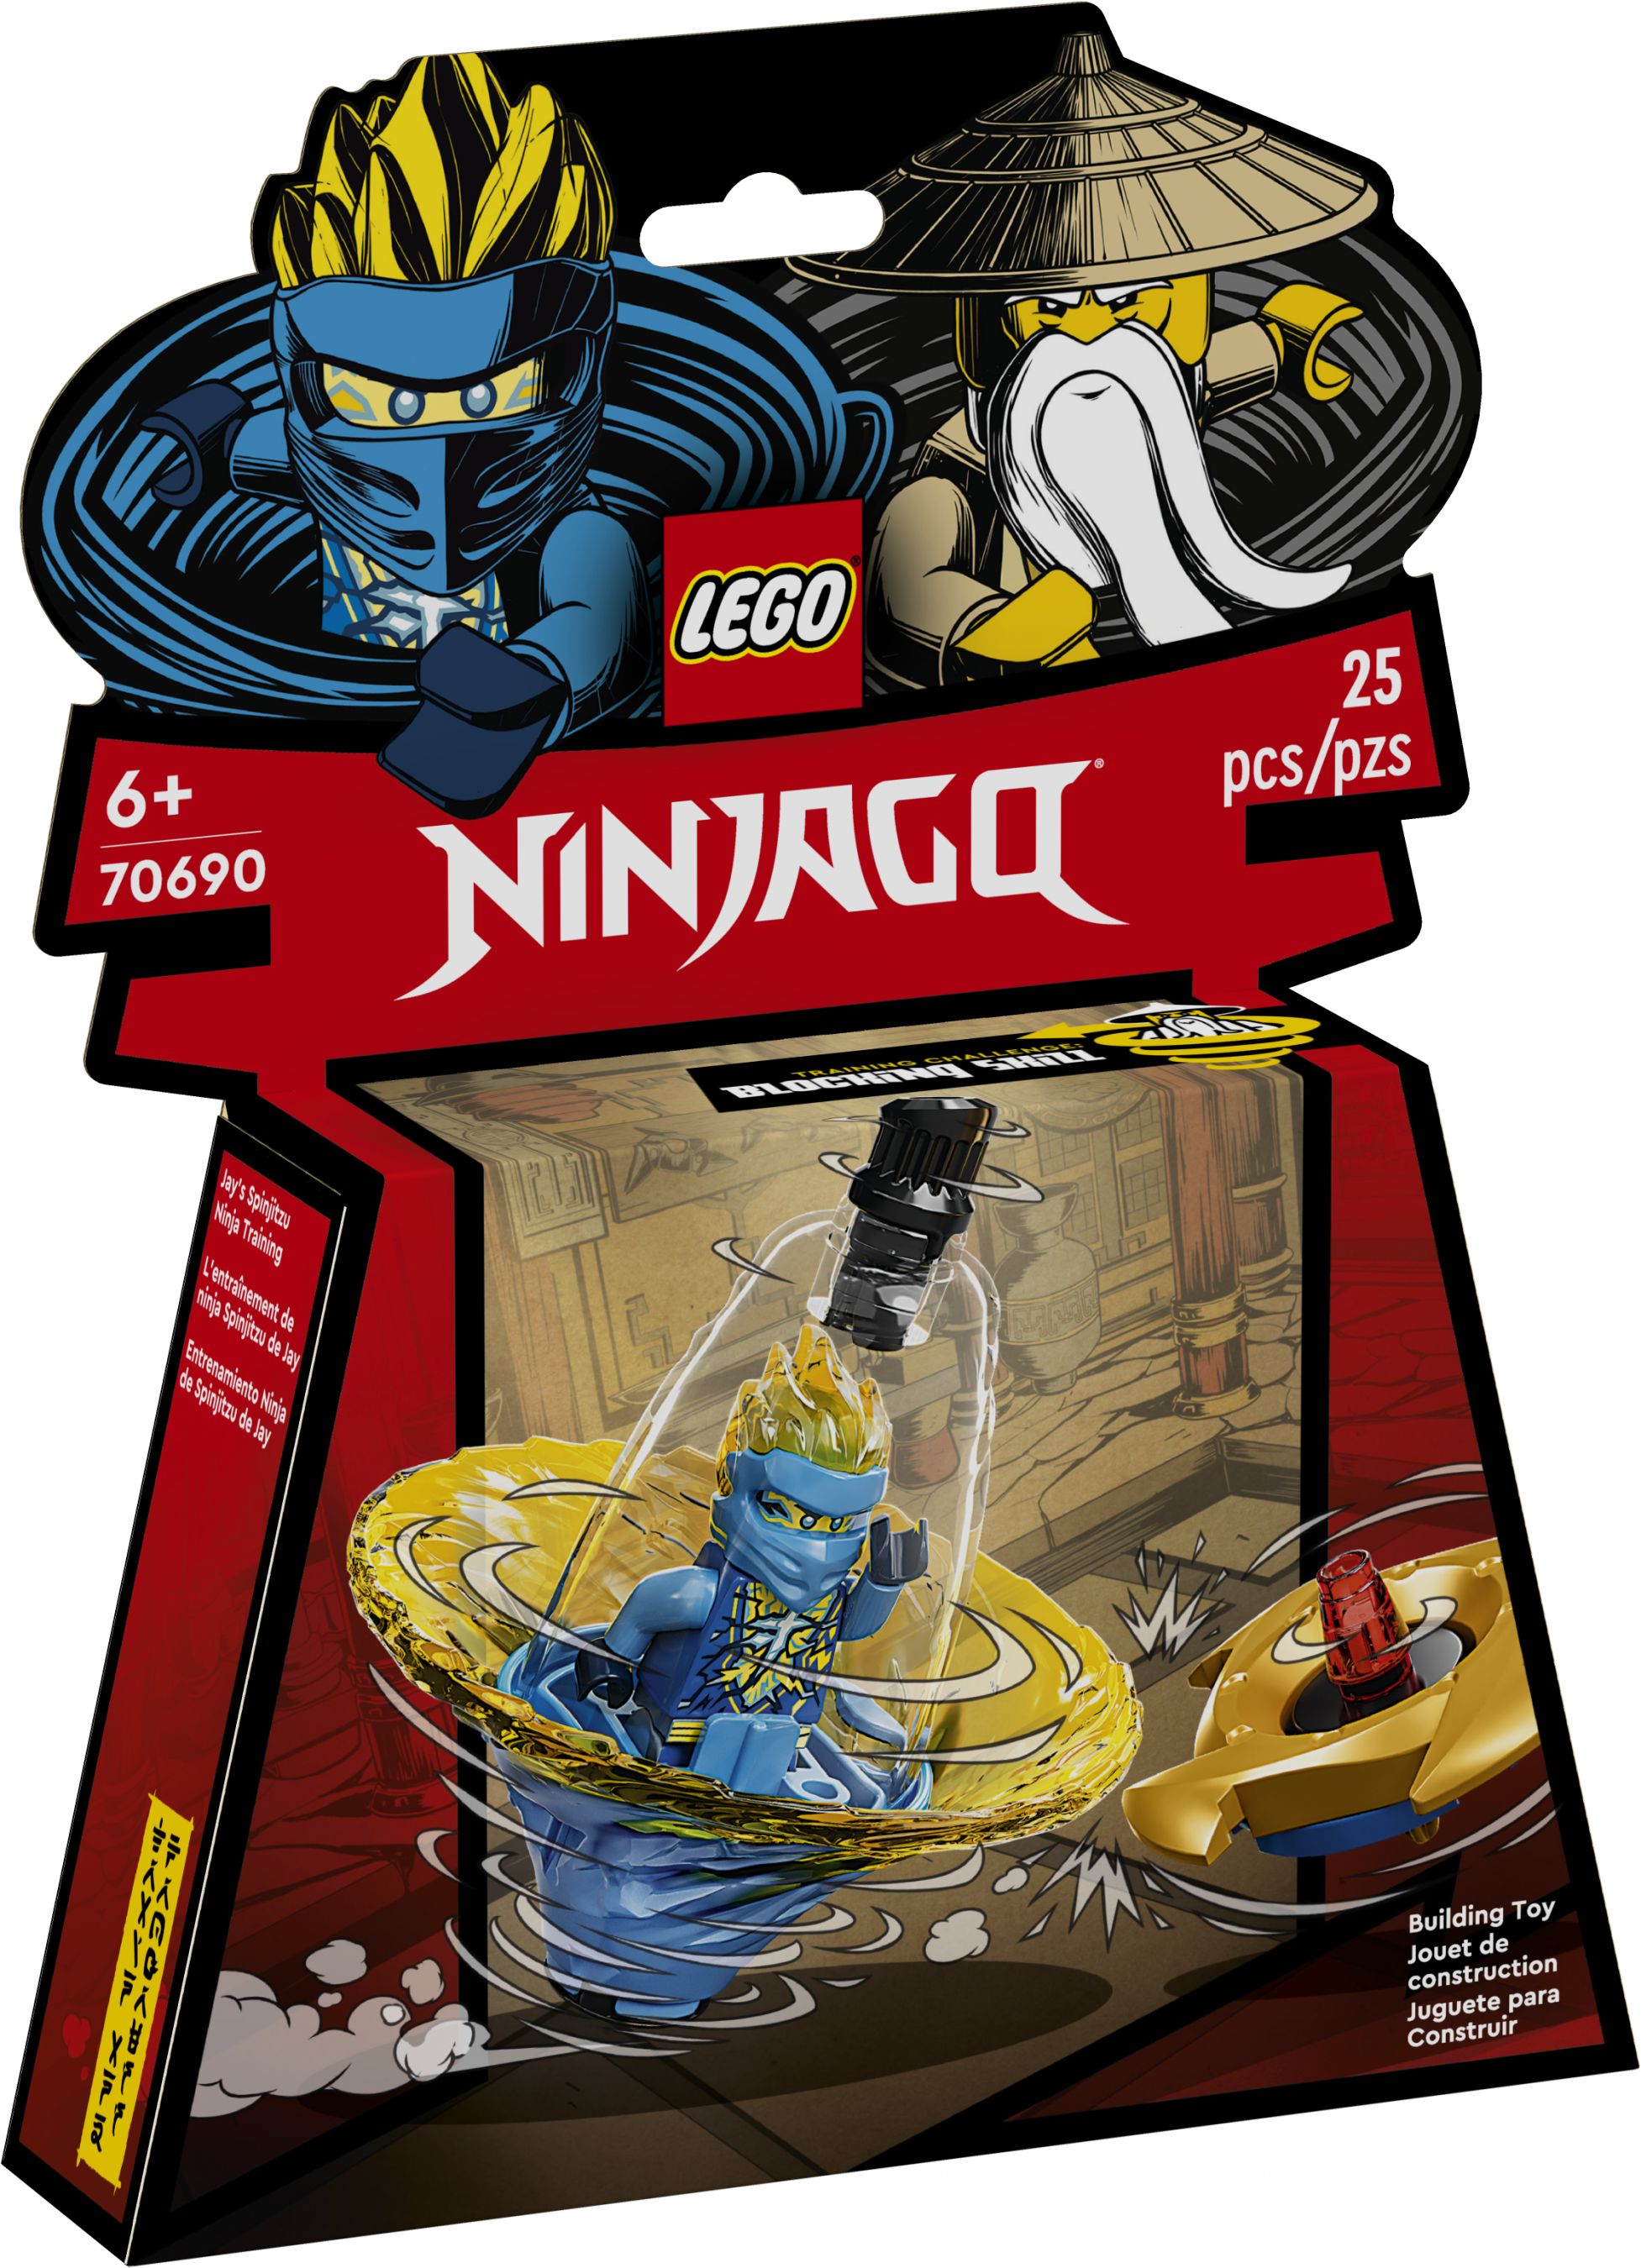 LEGO Ninjago 70690 Jays Spinjitzu-Ninjatraining LEGO_70690_Box1_V39.jpg